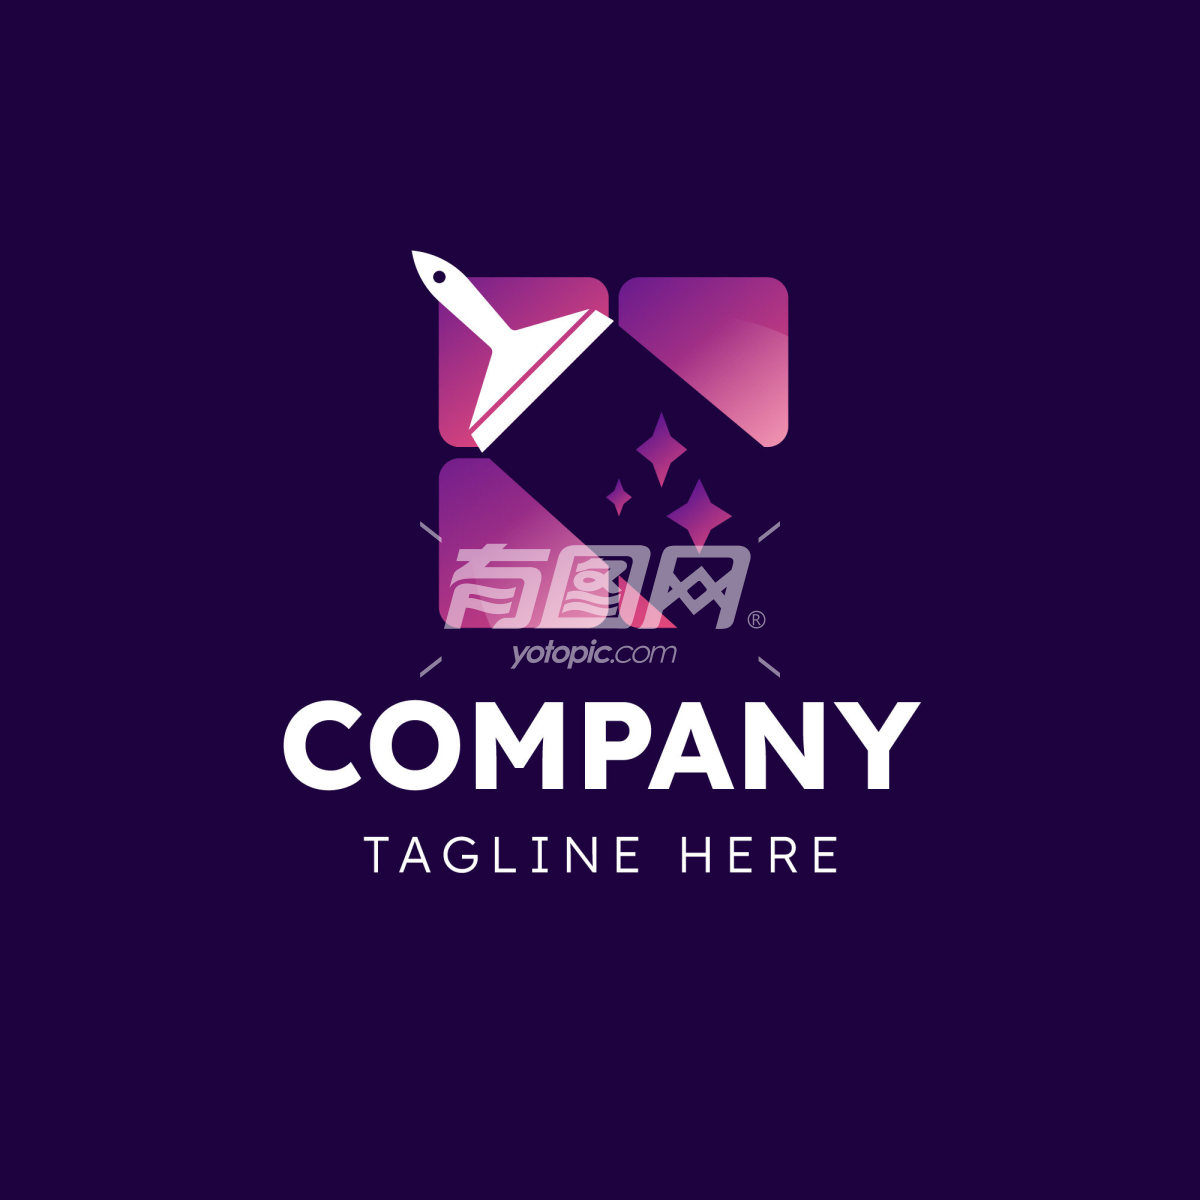 紫色背景的公司logo设计模板